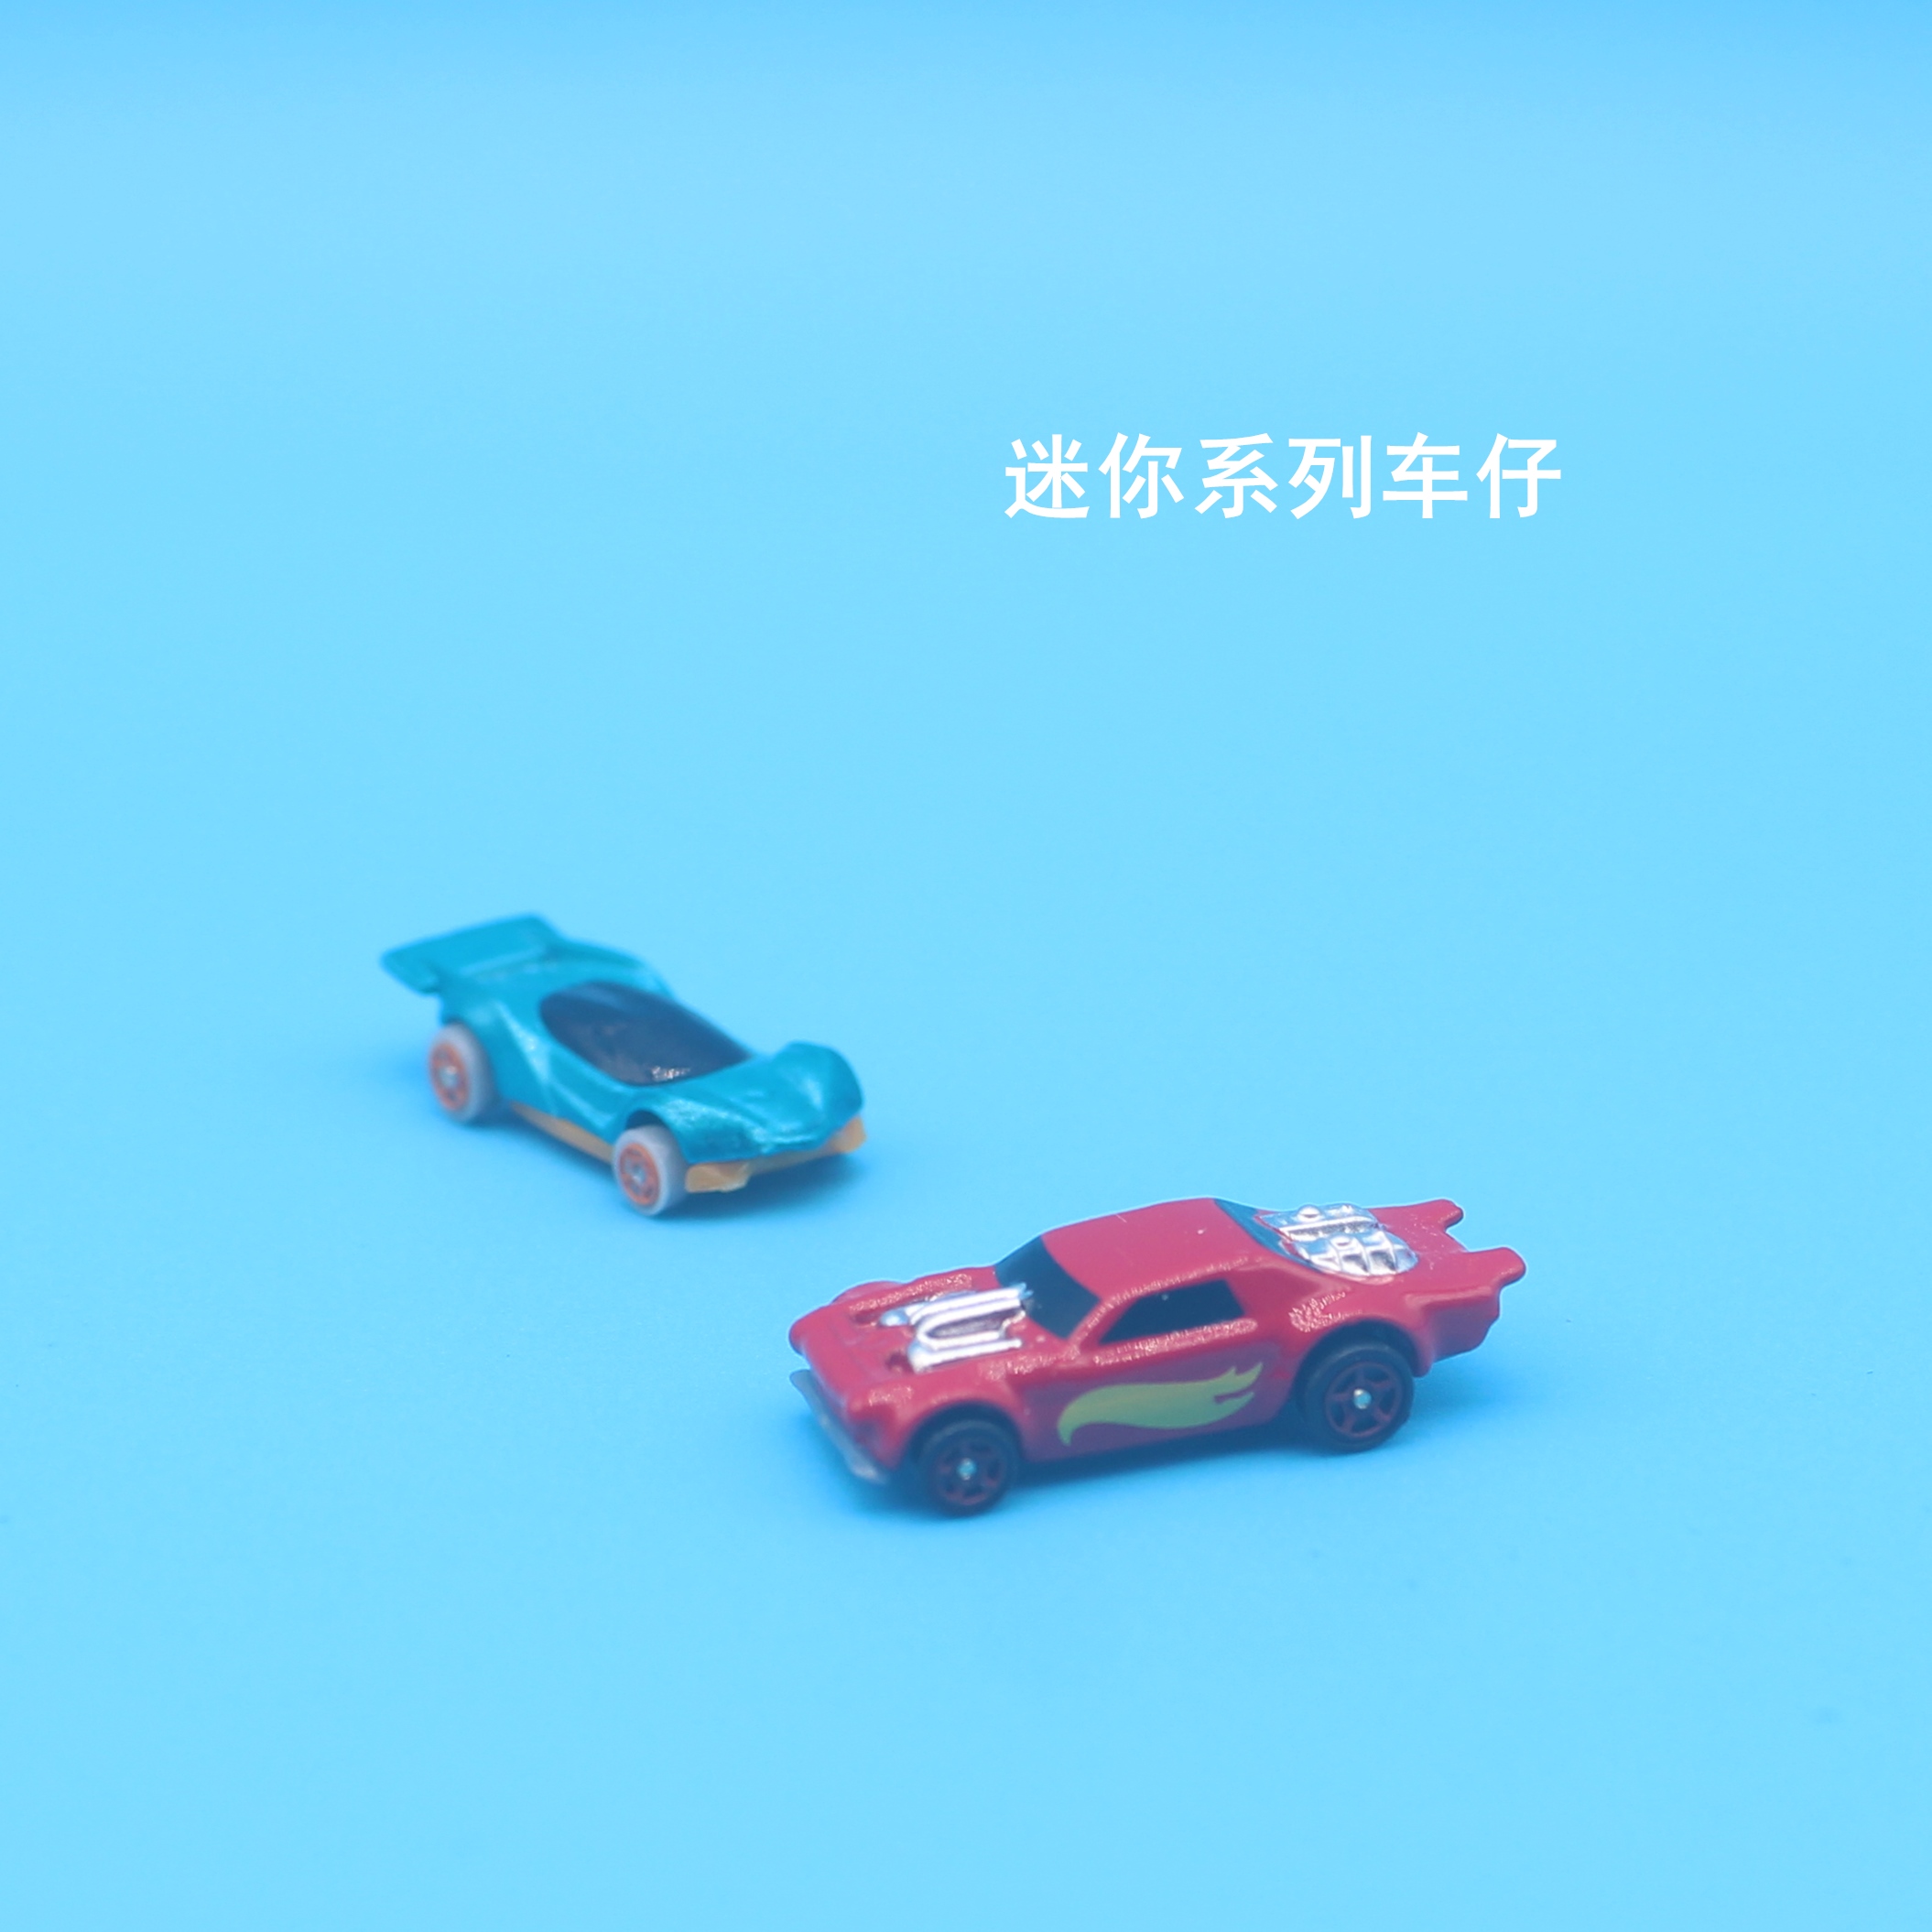 新品仿真合金迷你 小号轿跑车 赛车 汽车模型微缩场景观玩具摆件